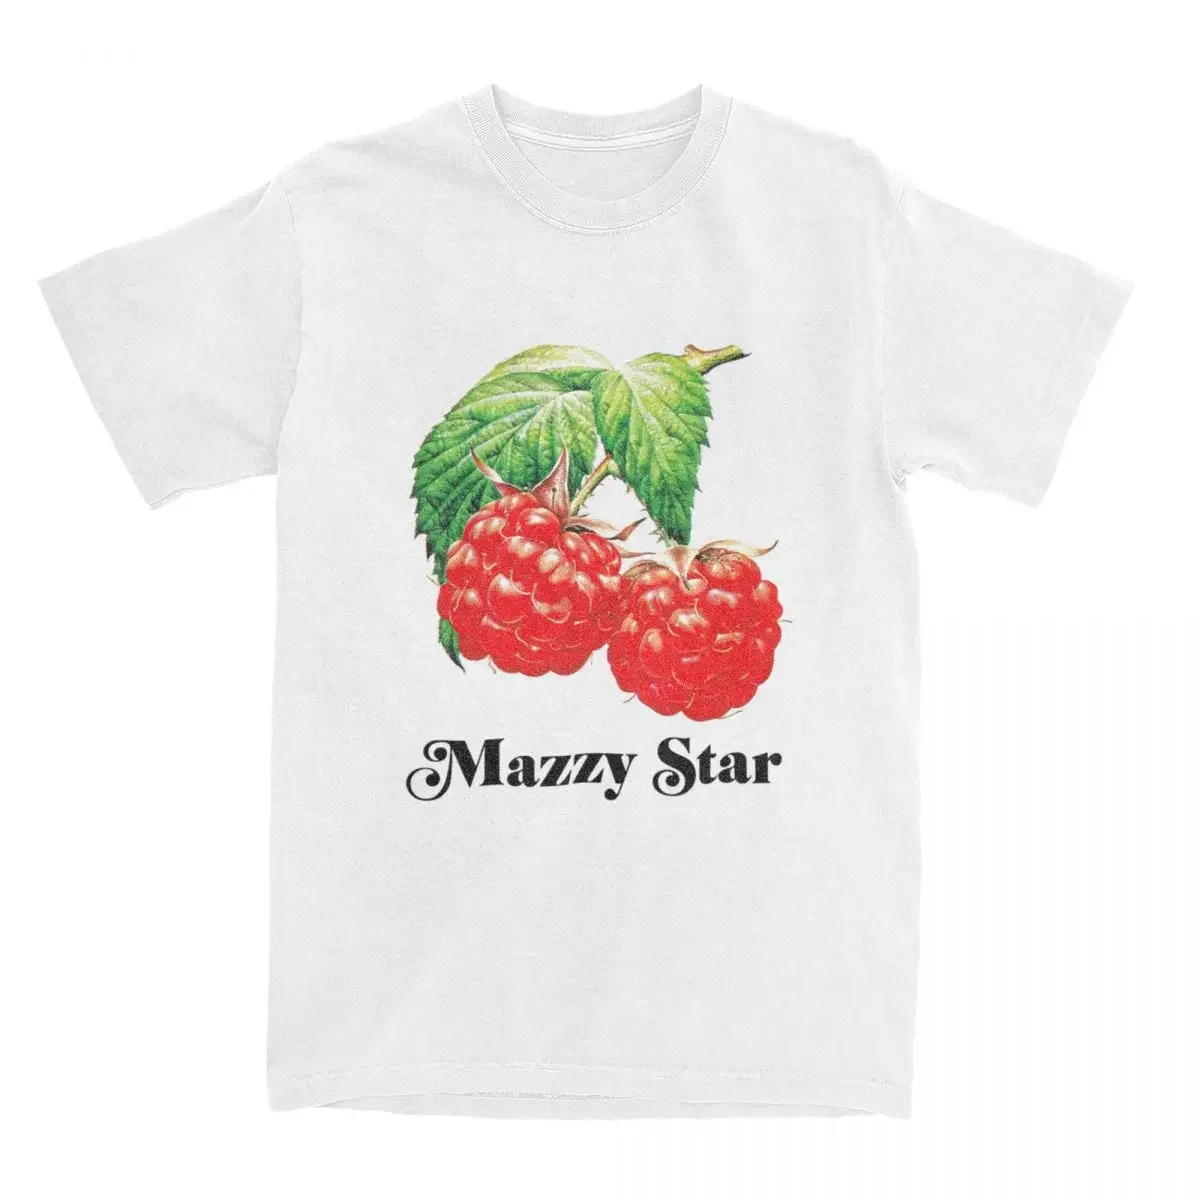 

Футболки с графическим принтом Mazzy Star, Мужская одежда, женские футболки с коротким рукавом, Новое поступление, летние футболки унисекс